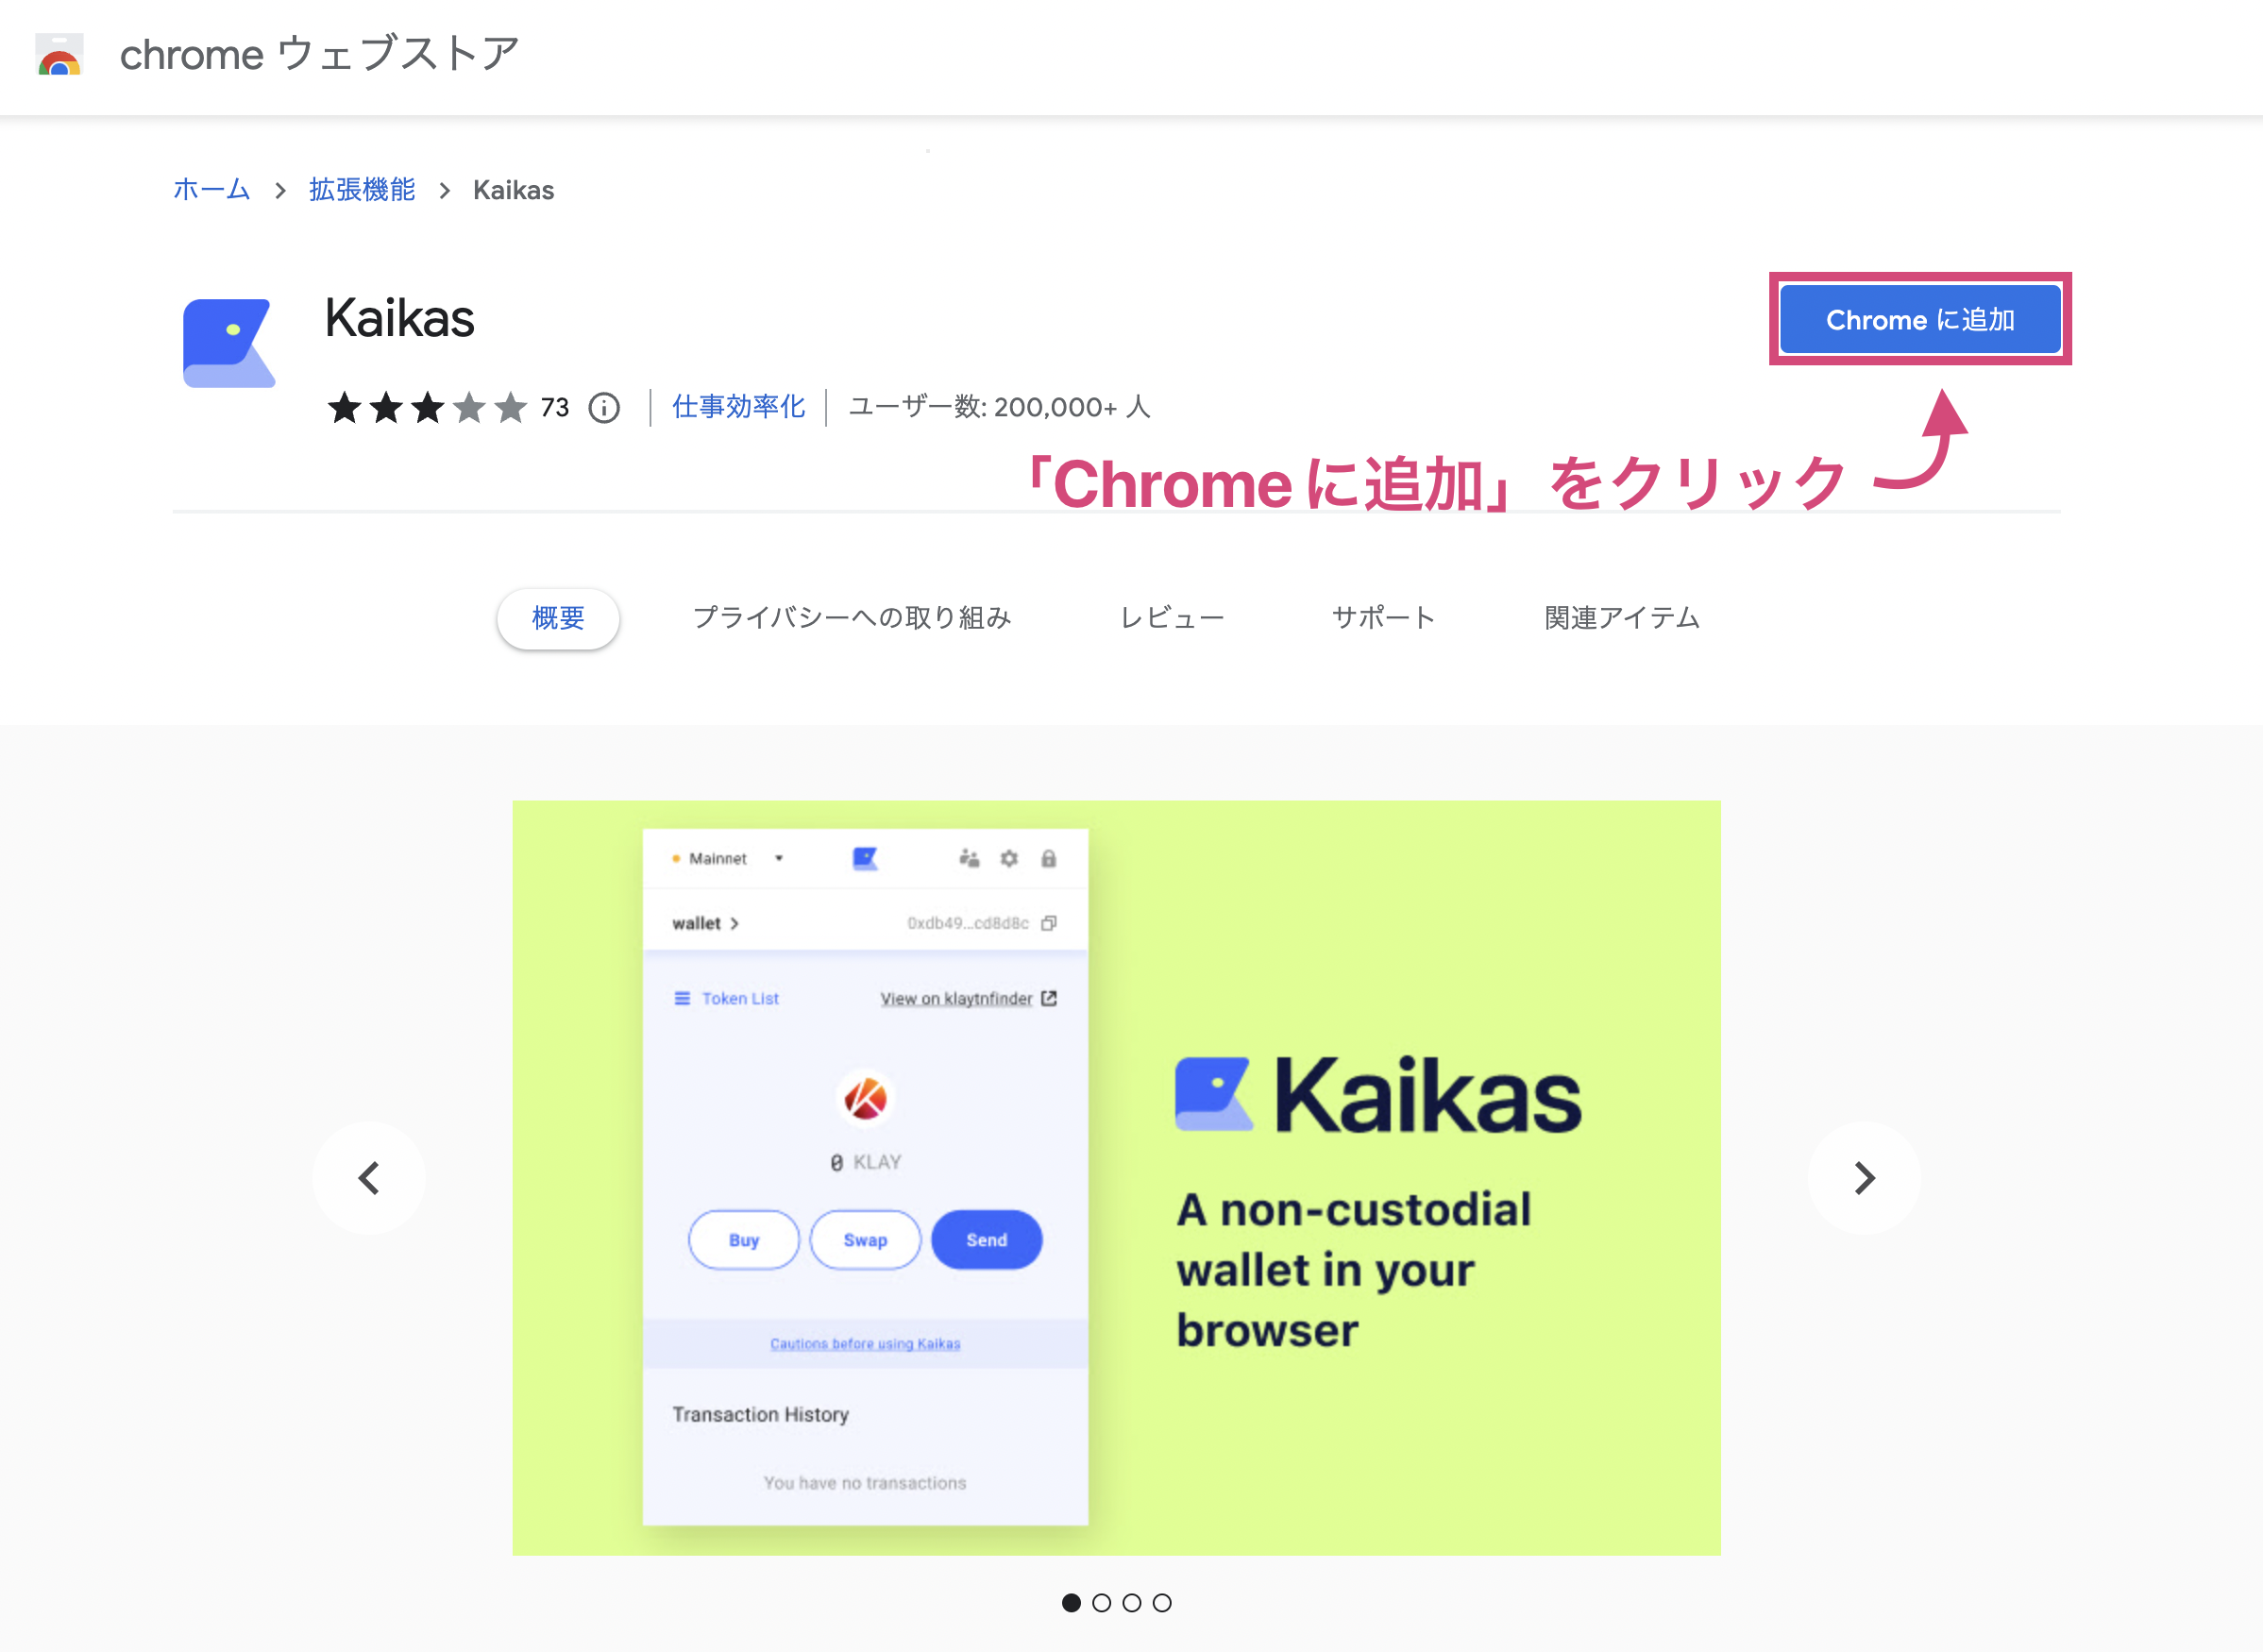 Kaikas (カイカス) ウォレットの始め方（ダウンロード）の手順③「Chromeに追加」を押す